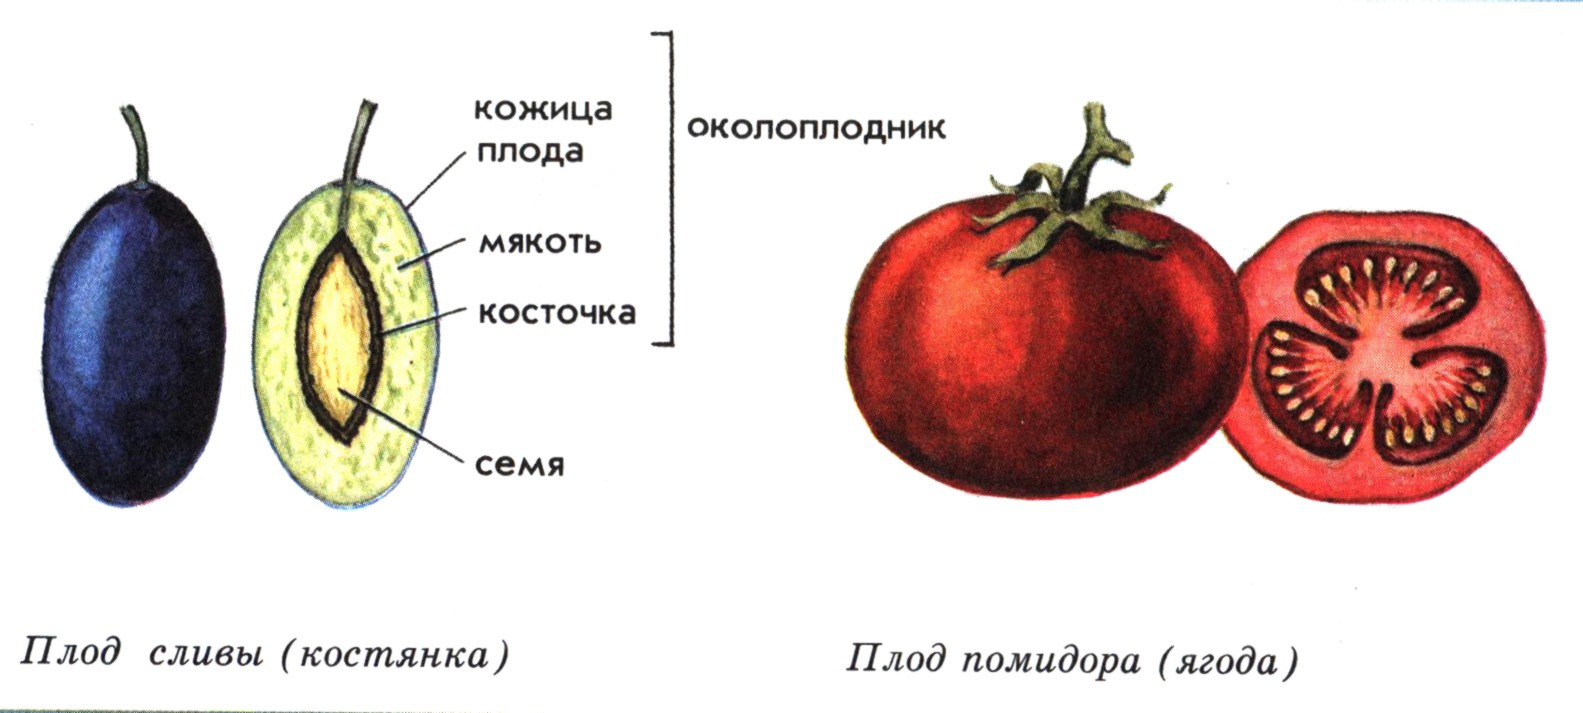 Из околоплодника и семян состоит. Строение плода томата. Строение ягодовидного плода. Внутреннее строение плода томата.